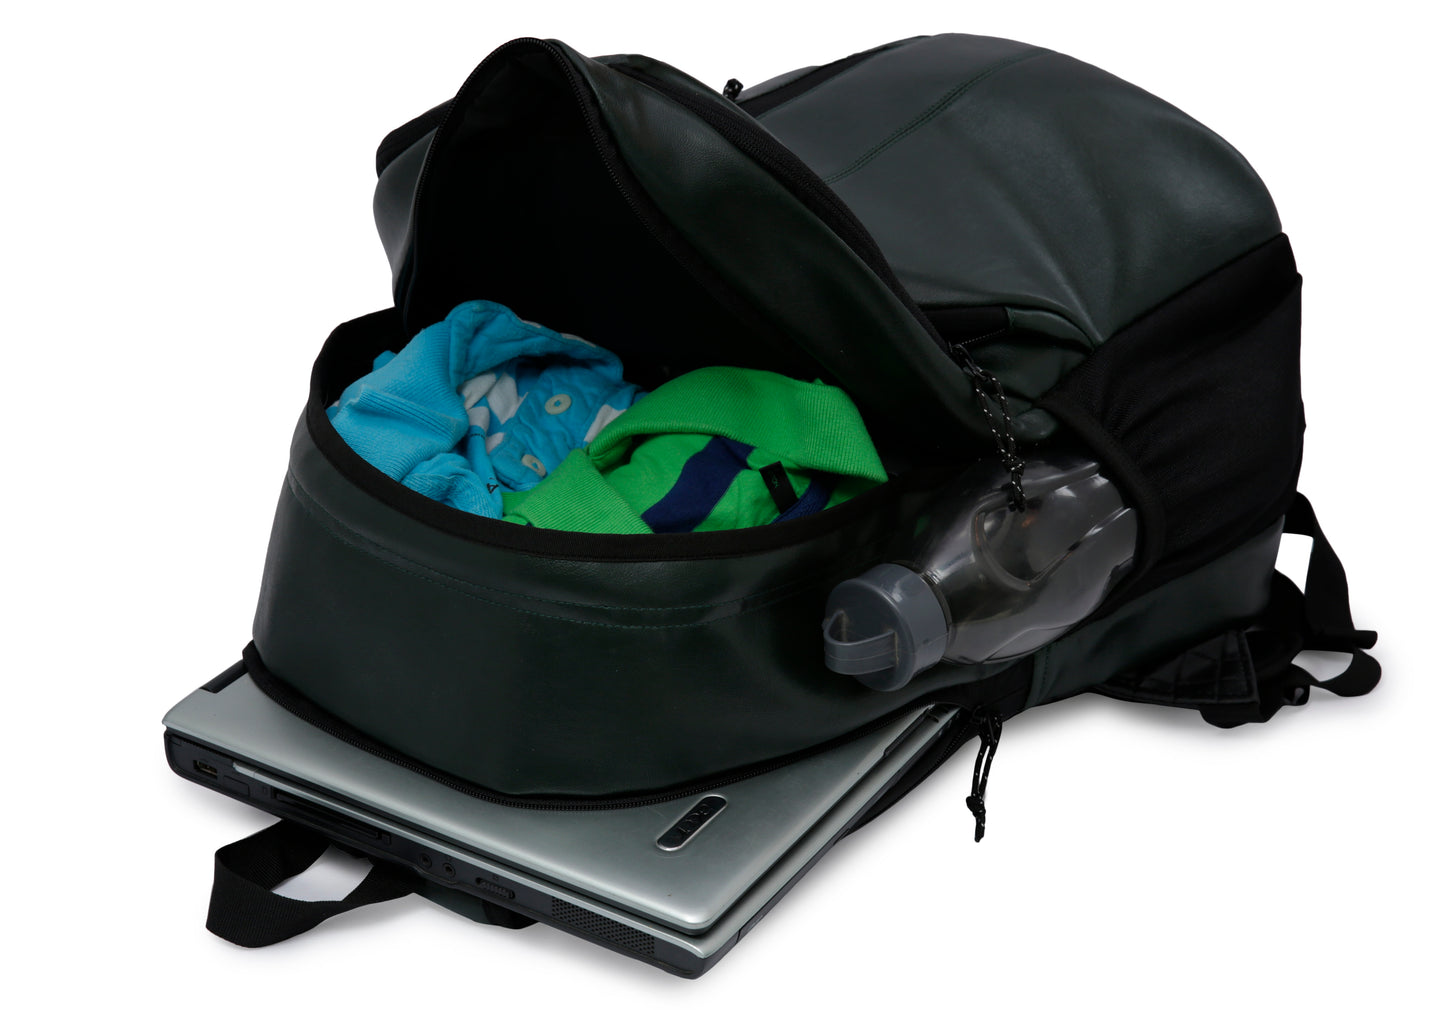 Tandrum V2 28L Olive Green Laptop Backpack